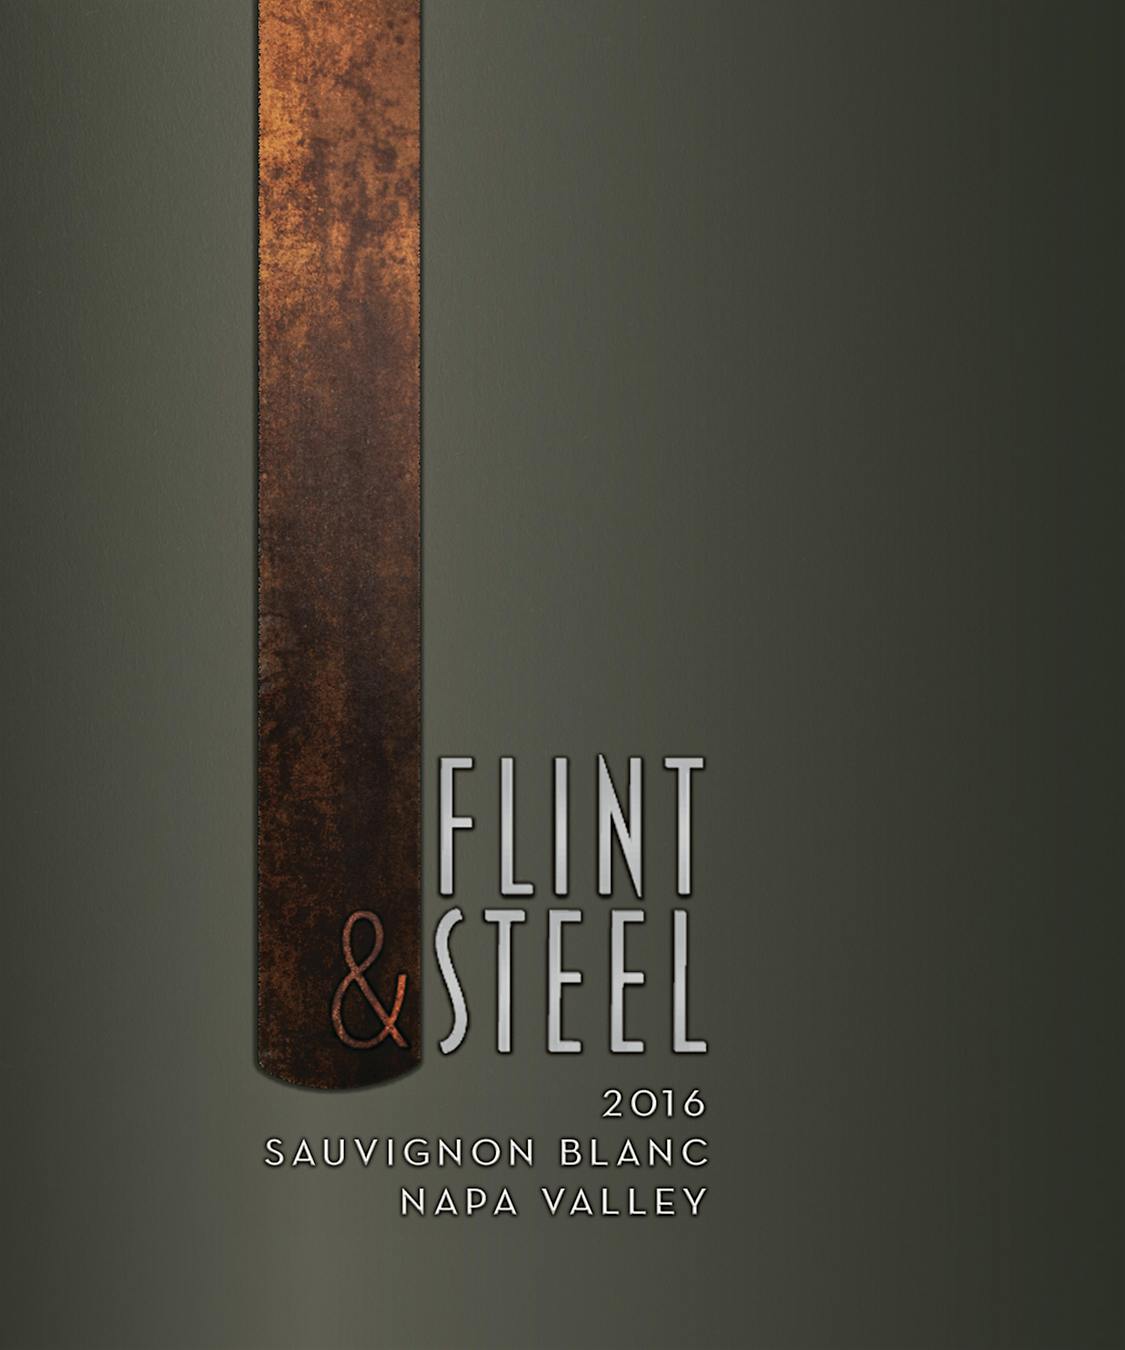 Label for Flint & Steel